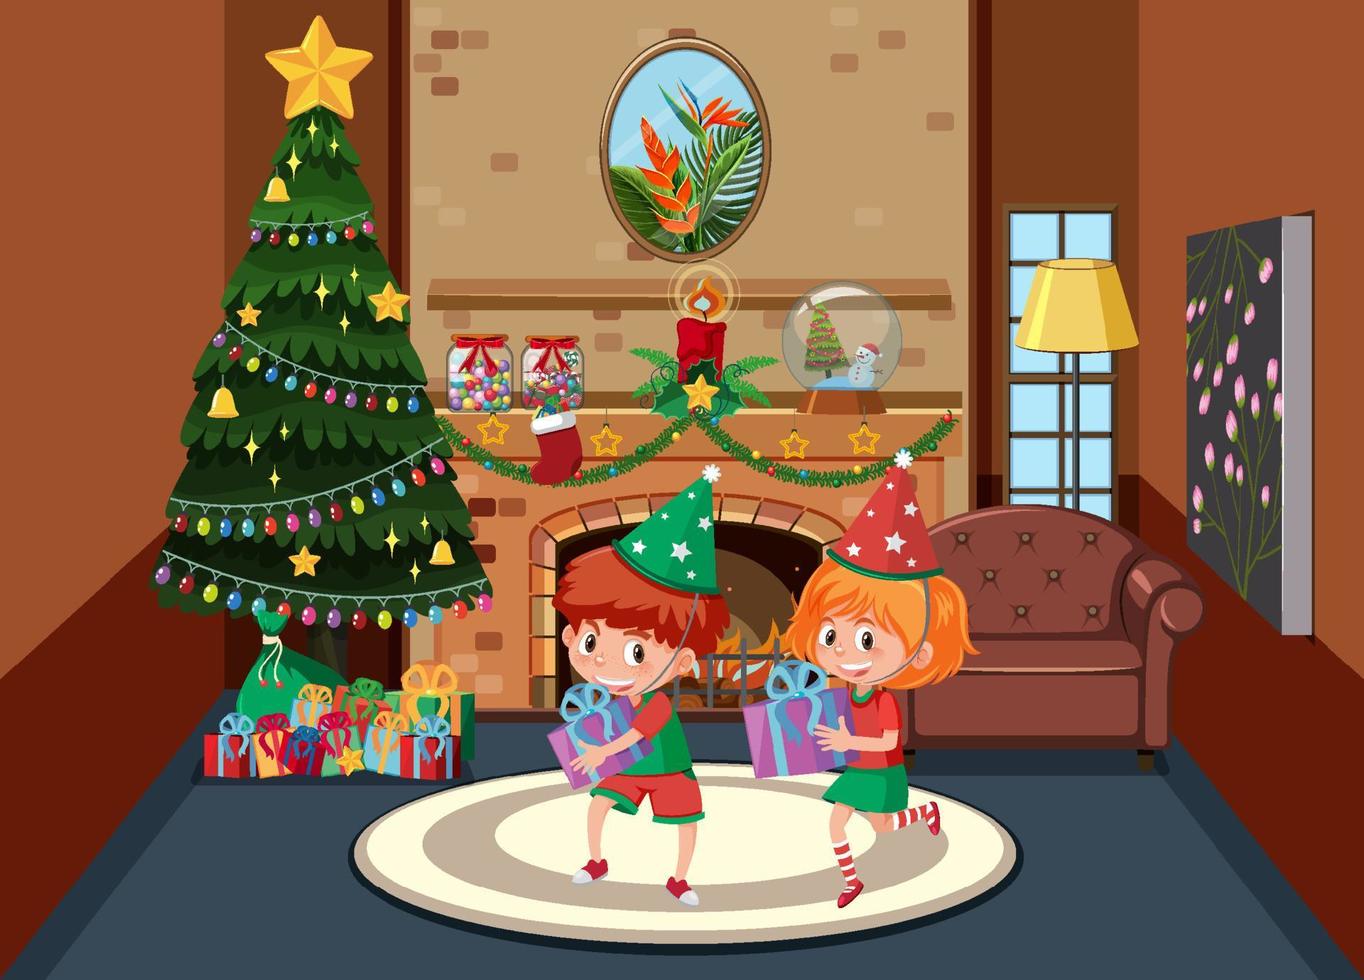 niños celebrando navidad en casa vector